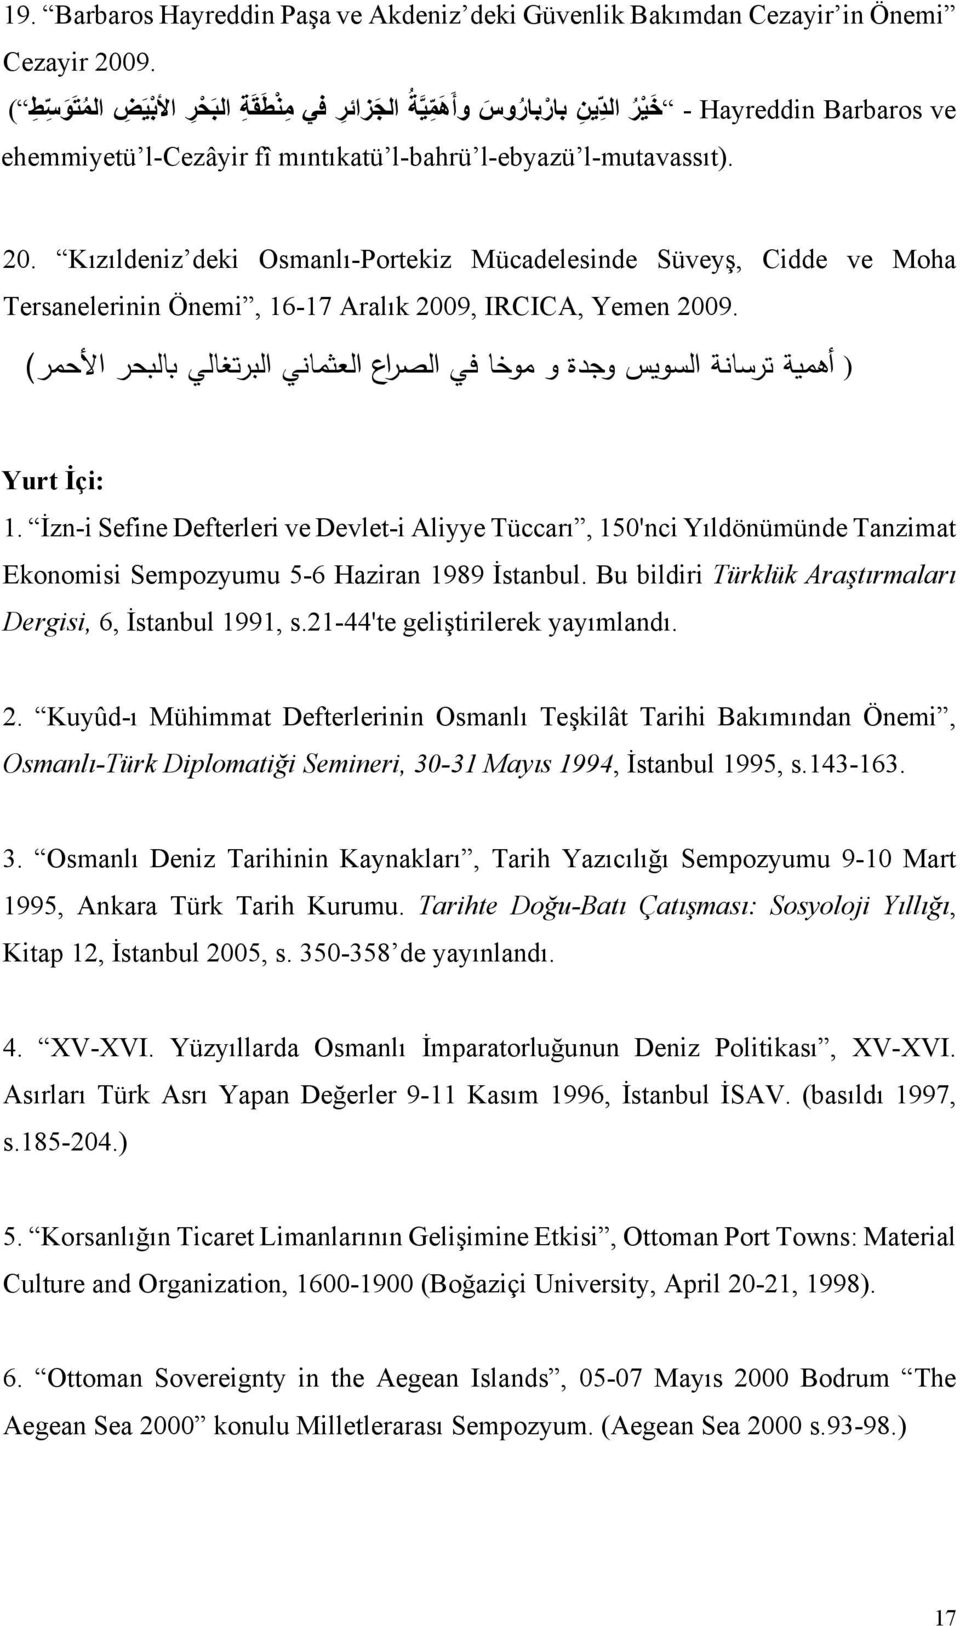 Kızıldeniz deki Osmanlı-Portekiz Mücadelesinde Süveyş, Cidde ve Moha Tersanelerinin Önemi, 16-17 Aralık 2009, IRCICA, Yemen 2009.